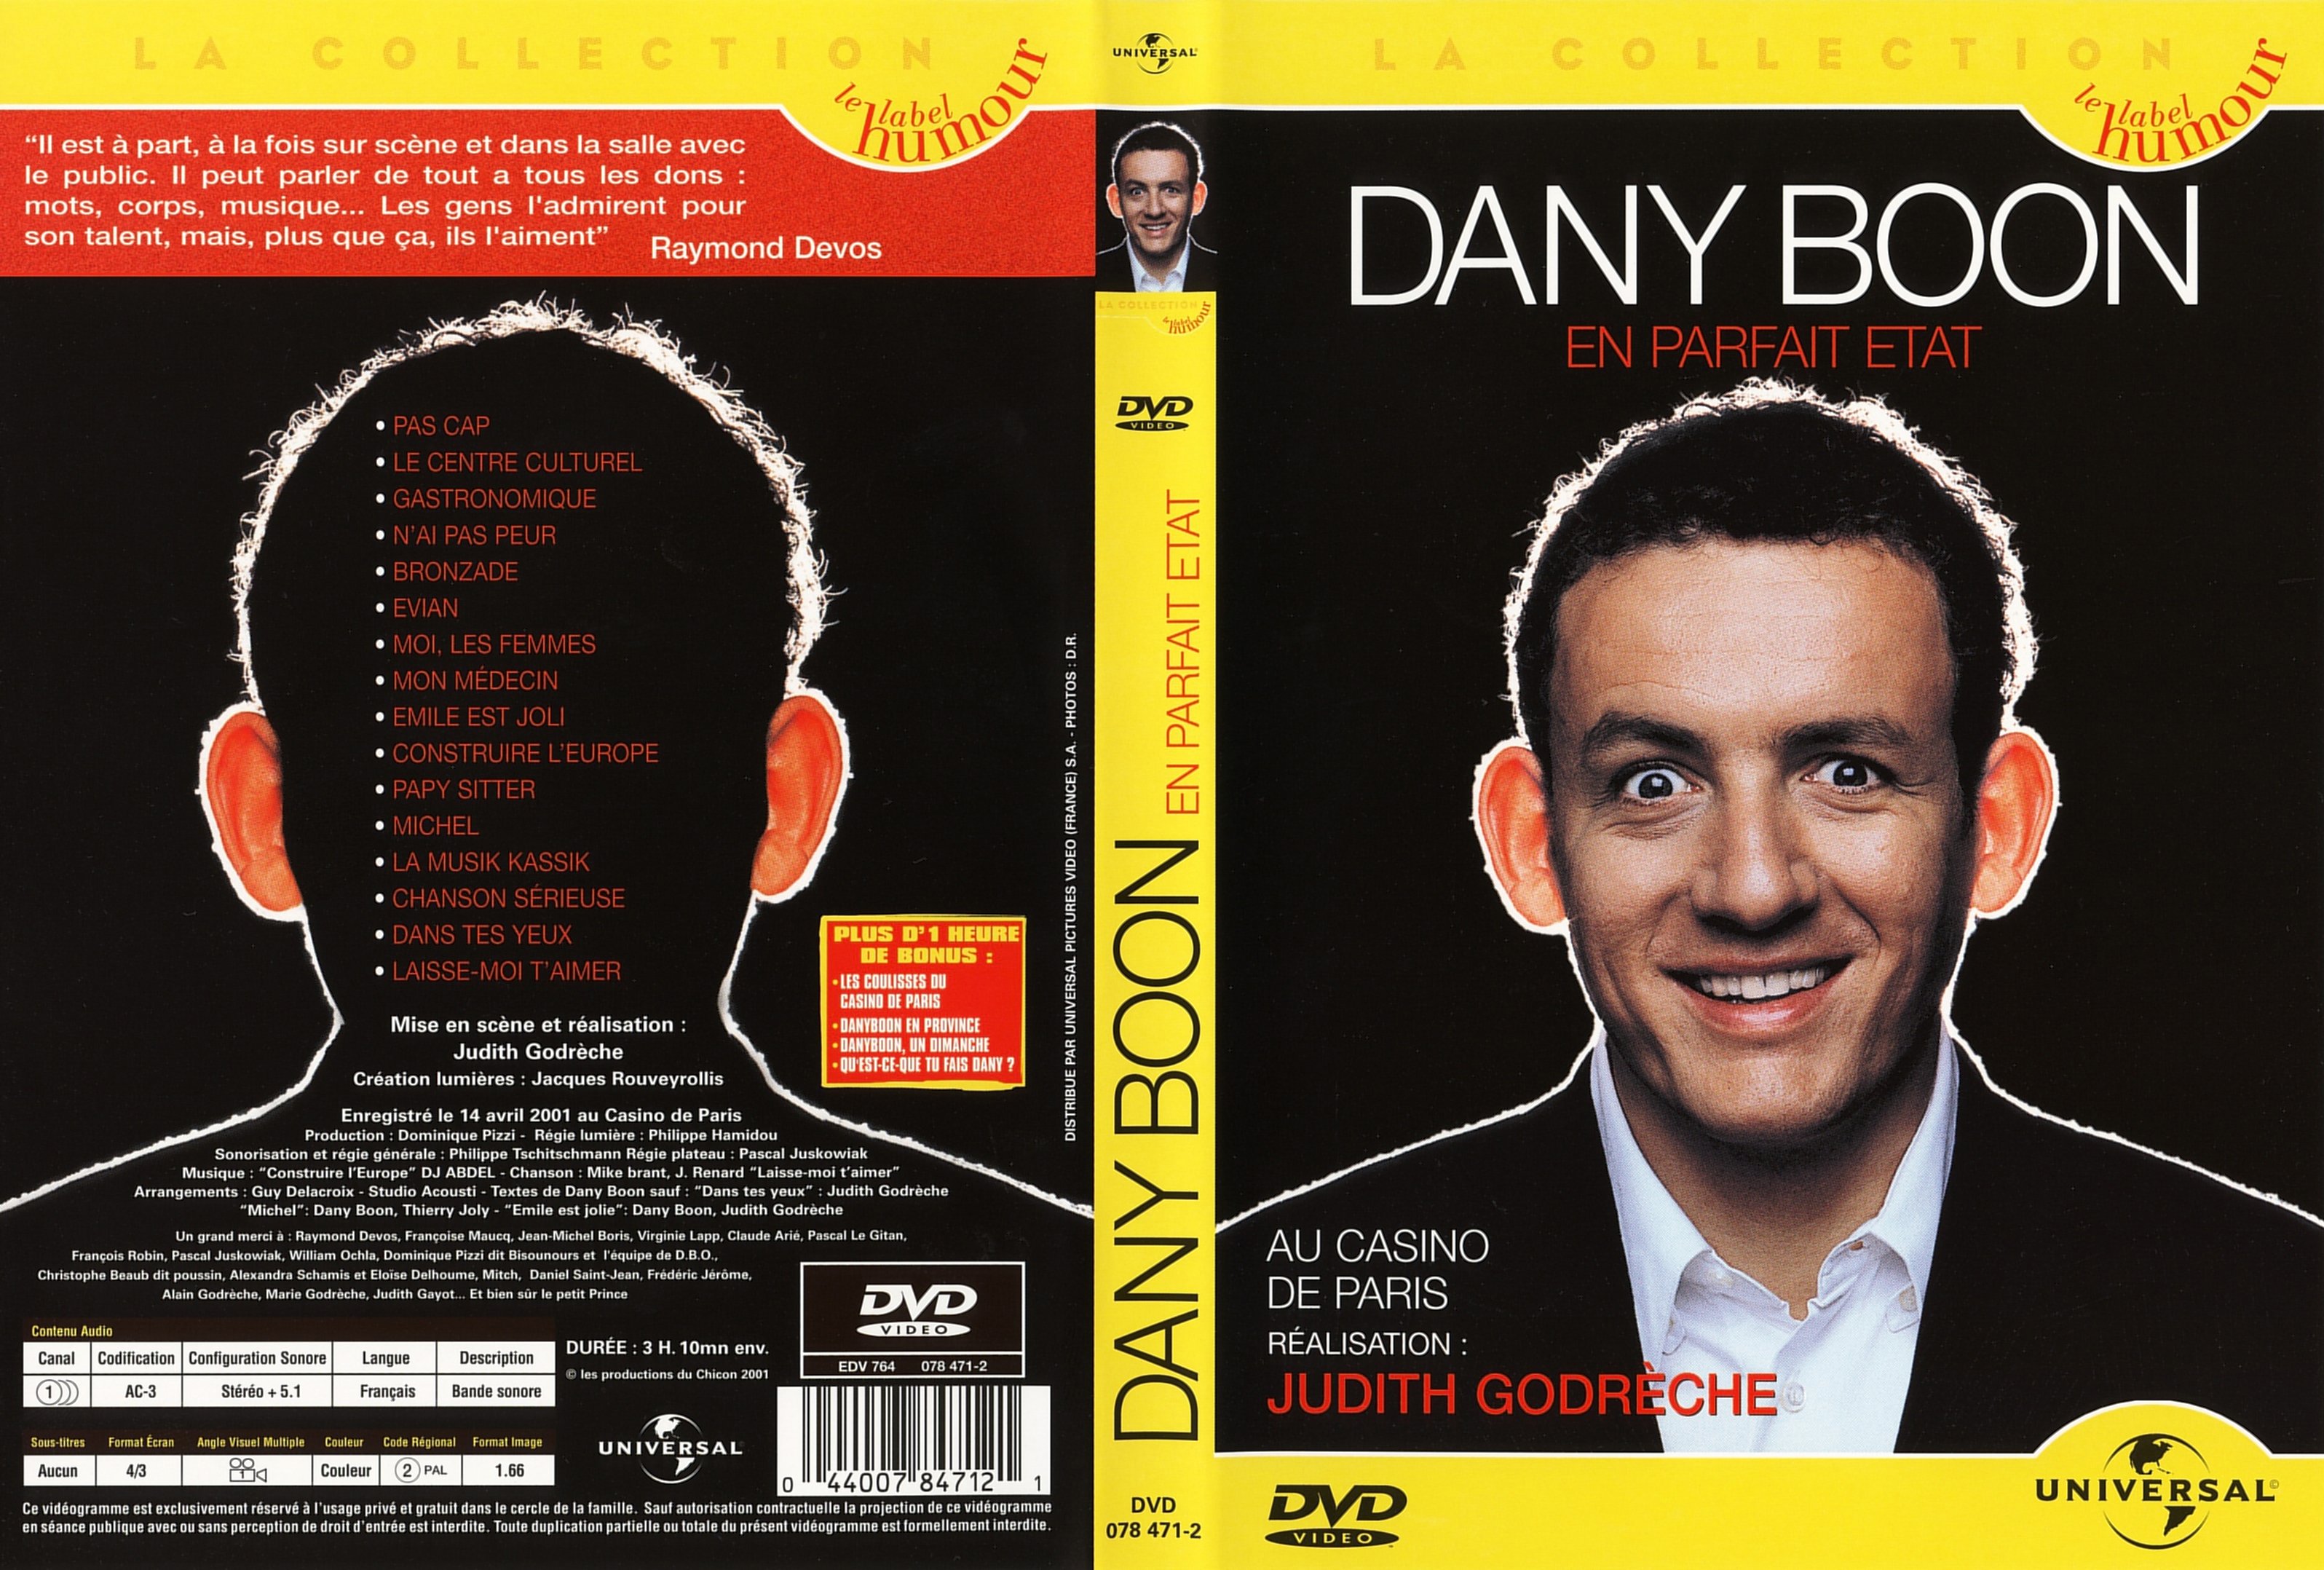 Jaquette DVD Dany Boon en parfait tat